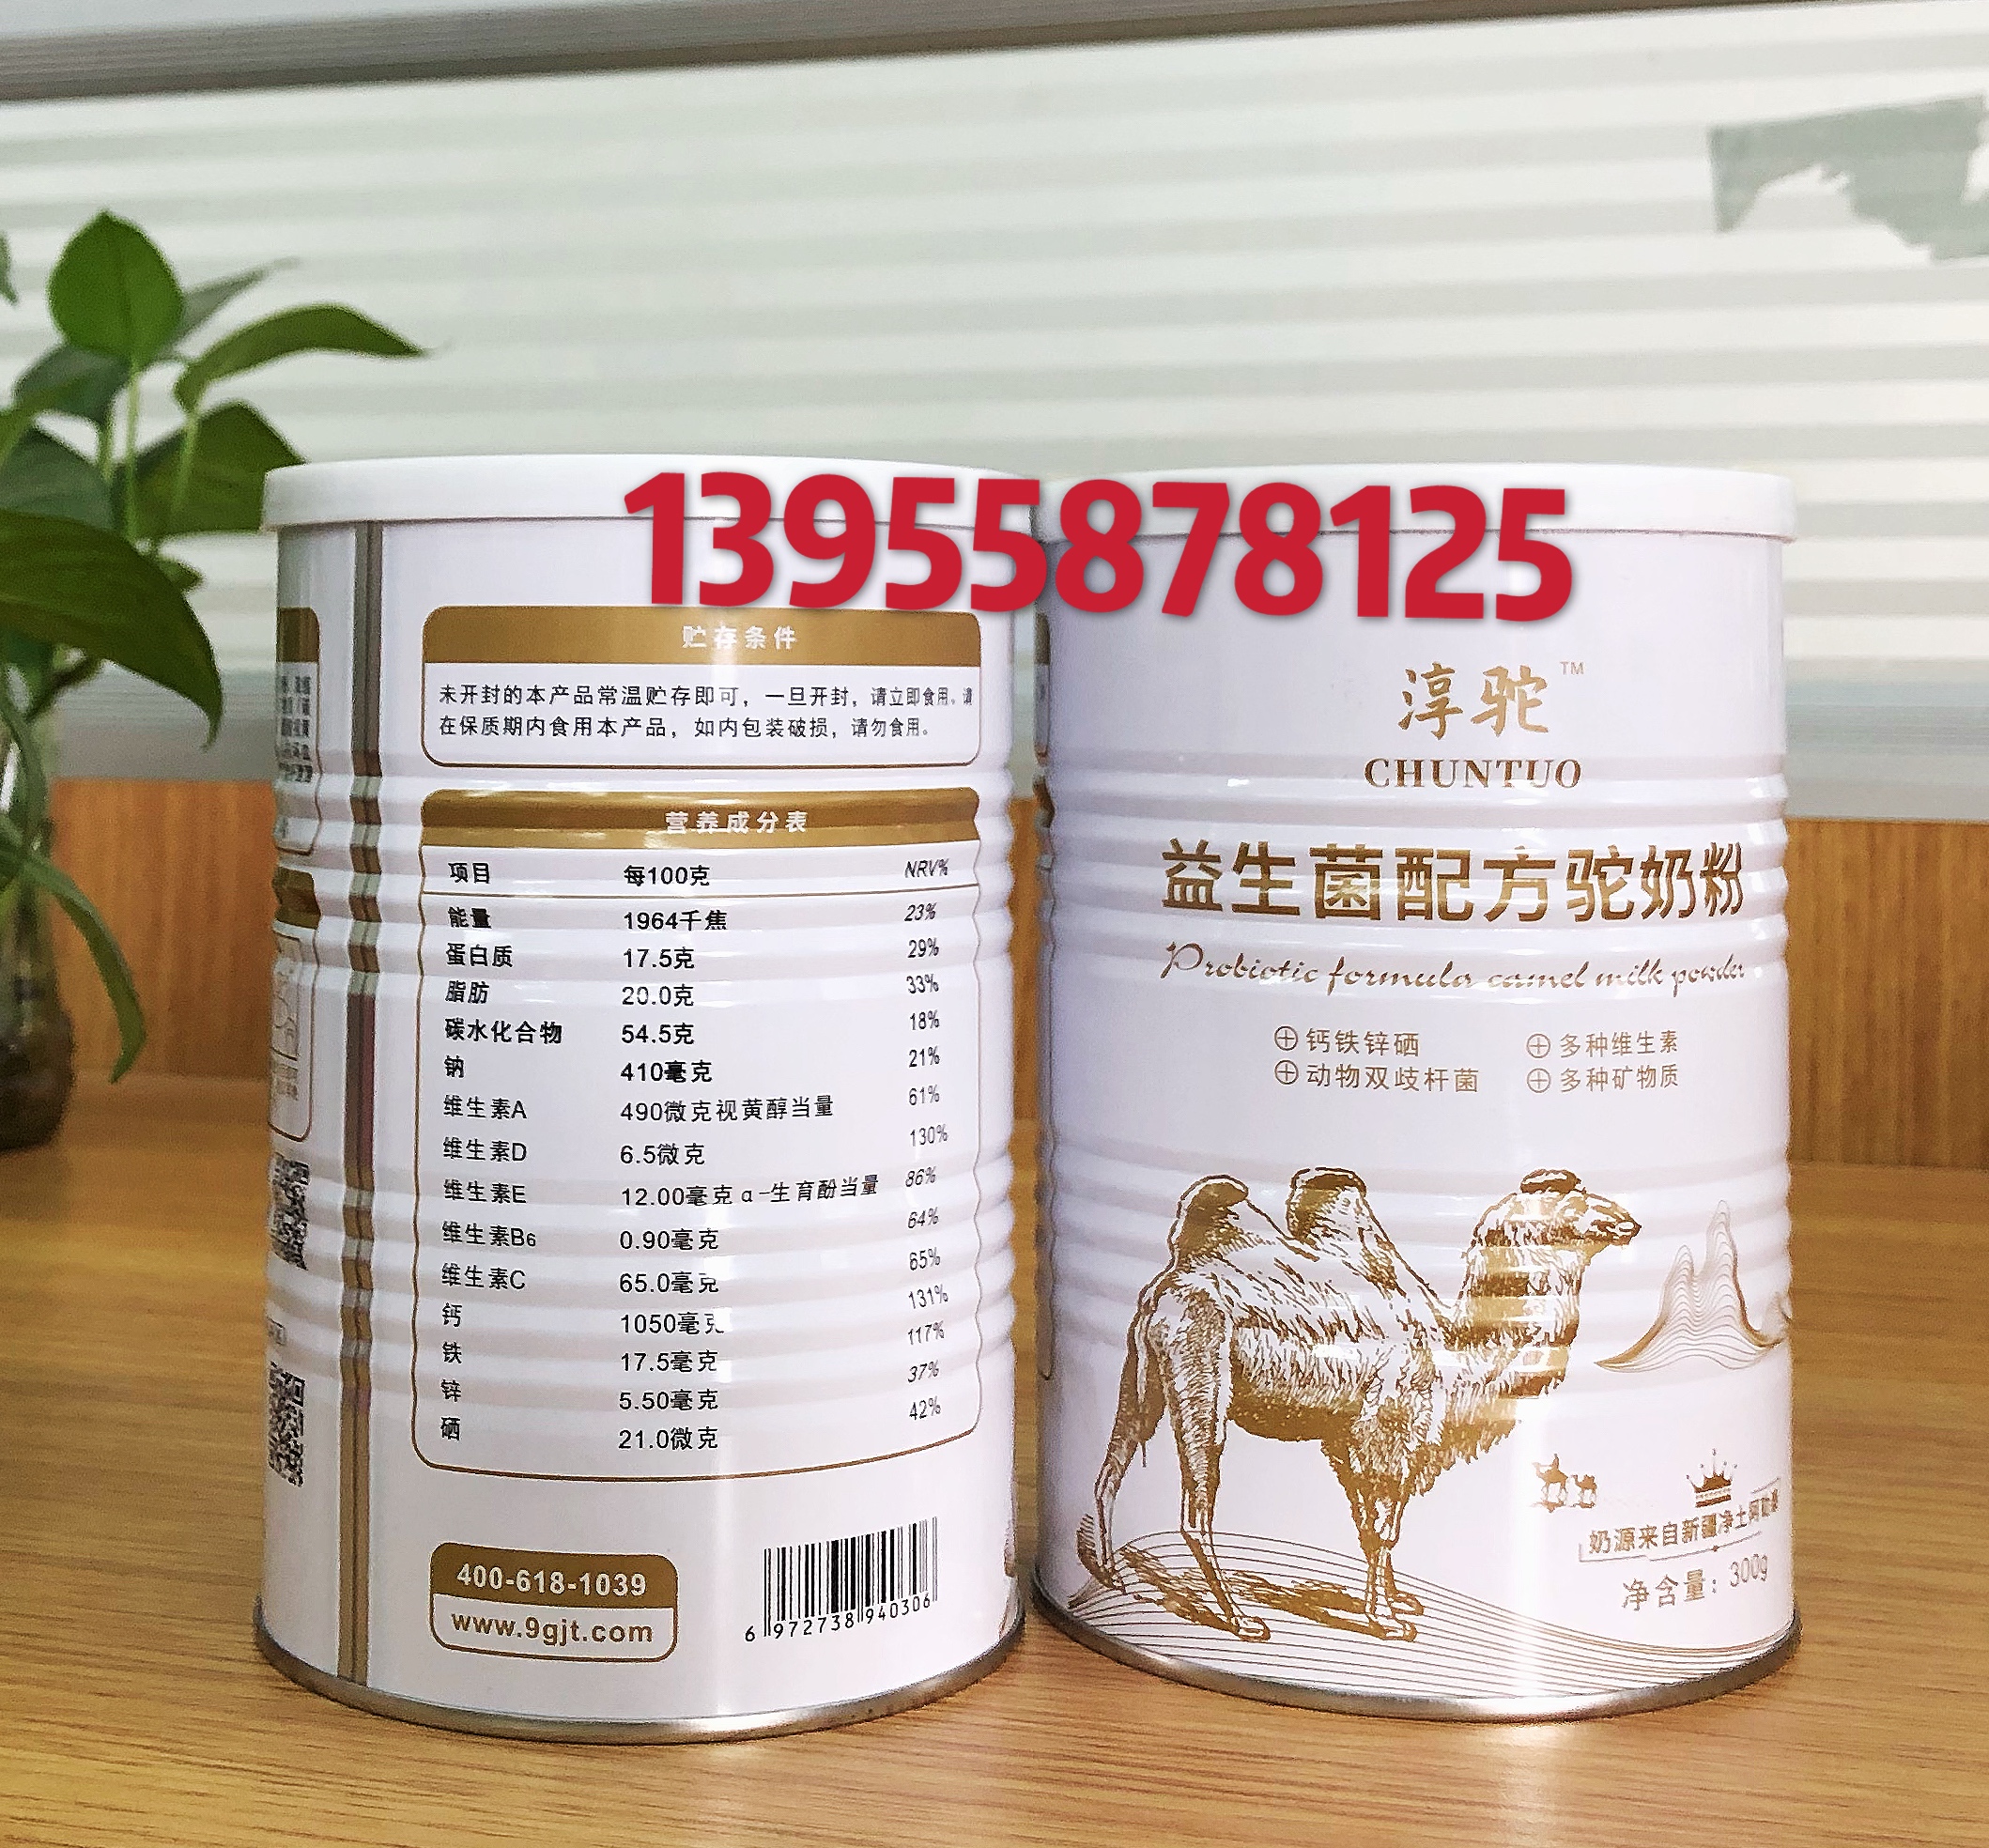 新疆淳驼驼奶厂家  淳驼驼奶供应商   新疆淳驼驼奶批发价格图片